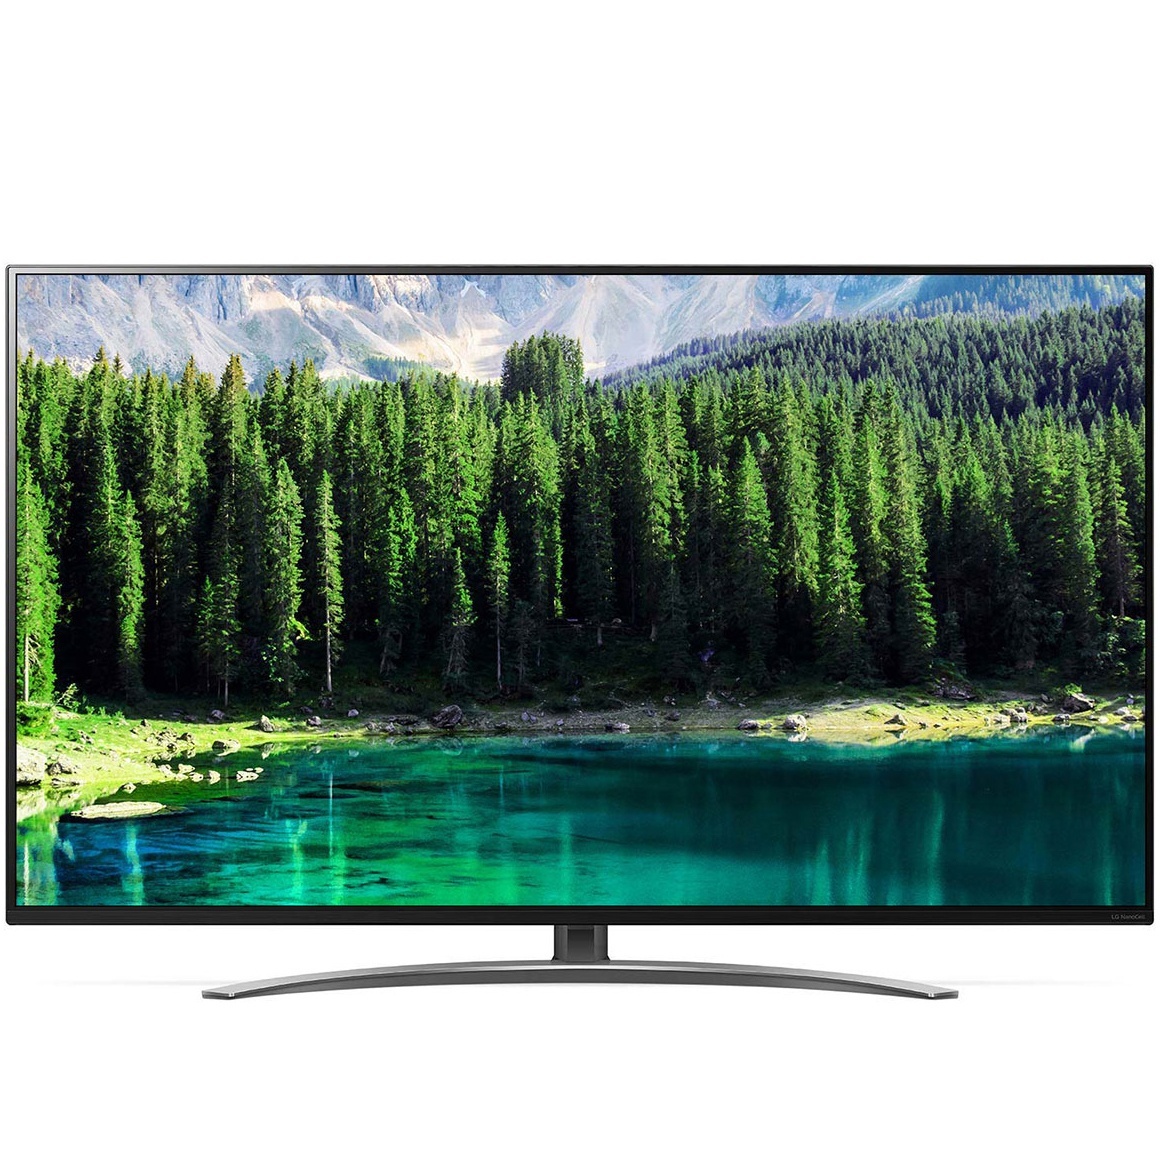 LG NanoCell Smart TV 65 inch 4K Cinema HDR IPS 65SM8600PTA chính hãng